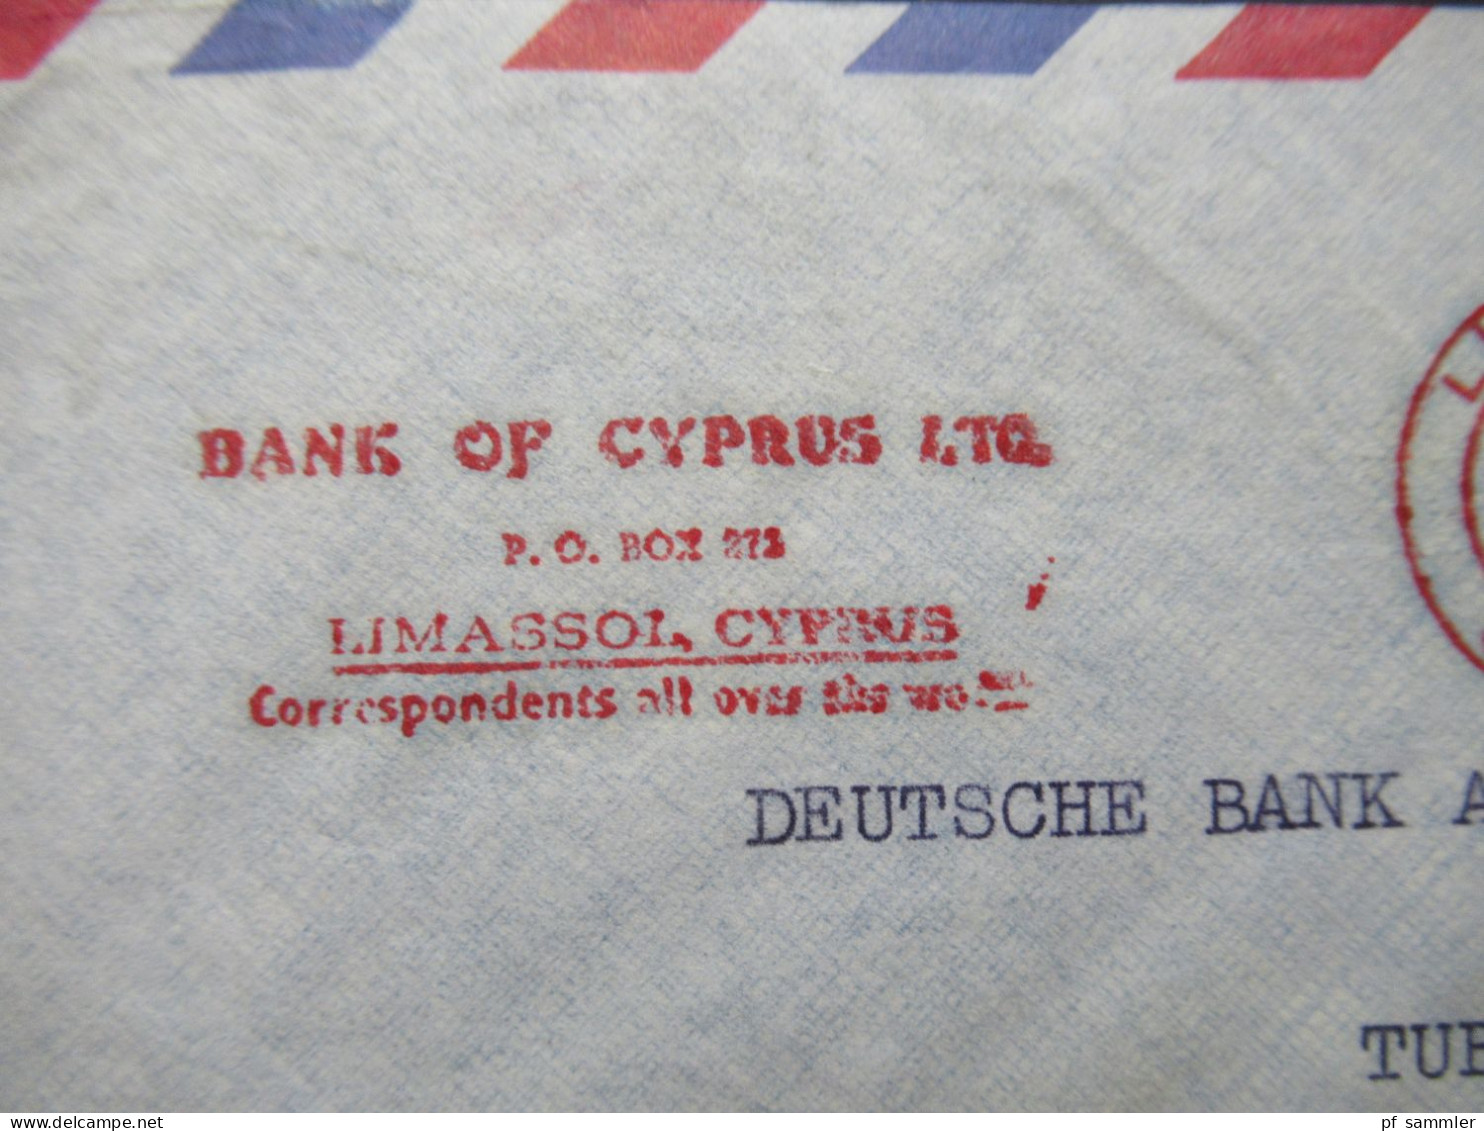 Zypern 1961 Par Avion Auslandsbrief Nach Tübingen Mit Freistempel AFS Limasol Cyprus Bank Of Cyprus LTD - Storia Postale